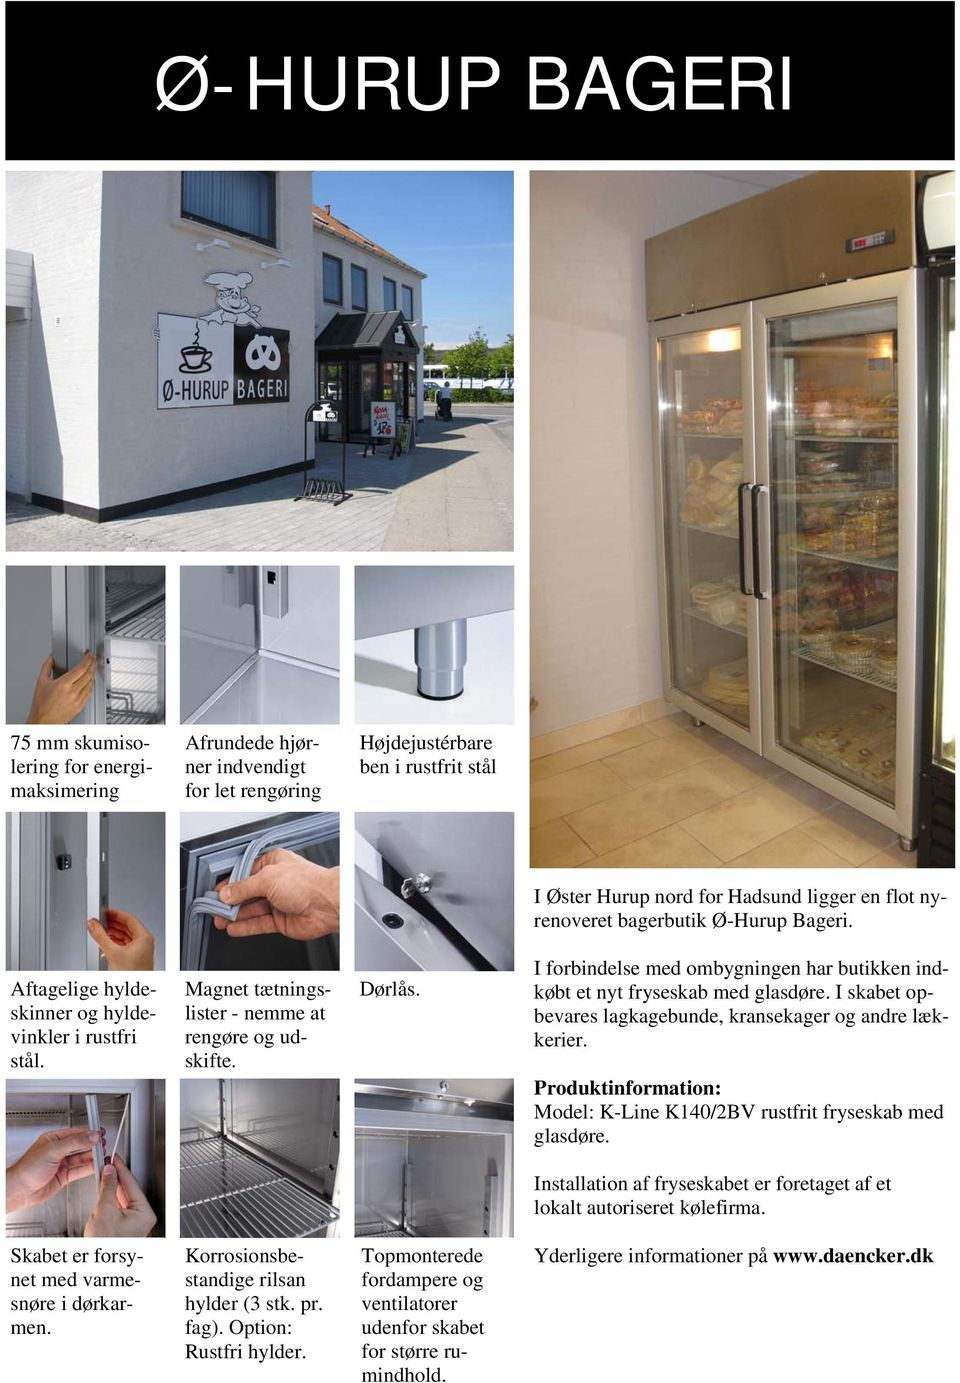 I forbindelse med ombygningen har butikken indkøbt et nyt fryseskab med glasdøre. I skabet opbevares lagkagebunde, kransekager og andre lækkerier.